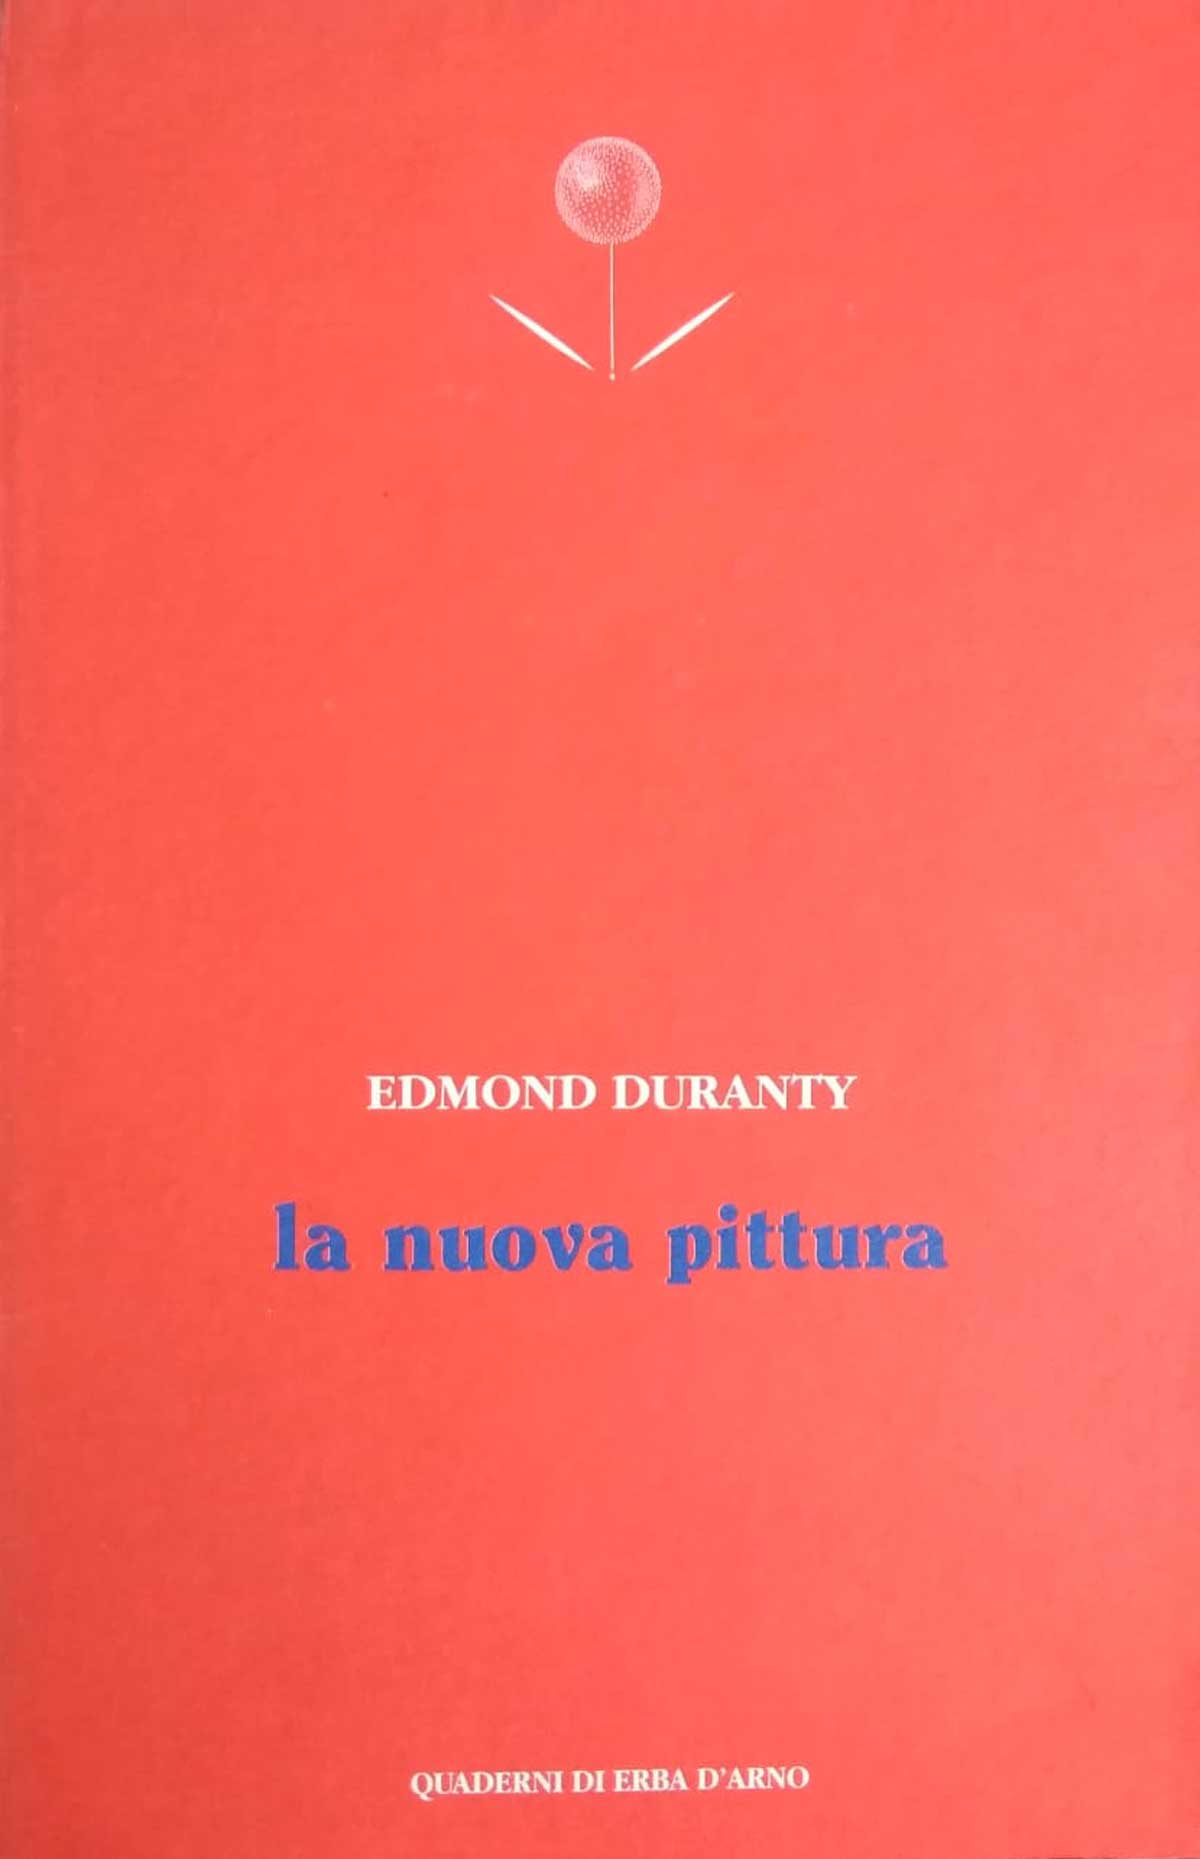 Quaderni-erba-rosso-1200x1859